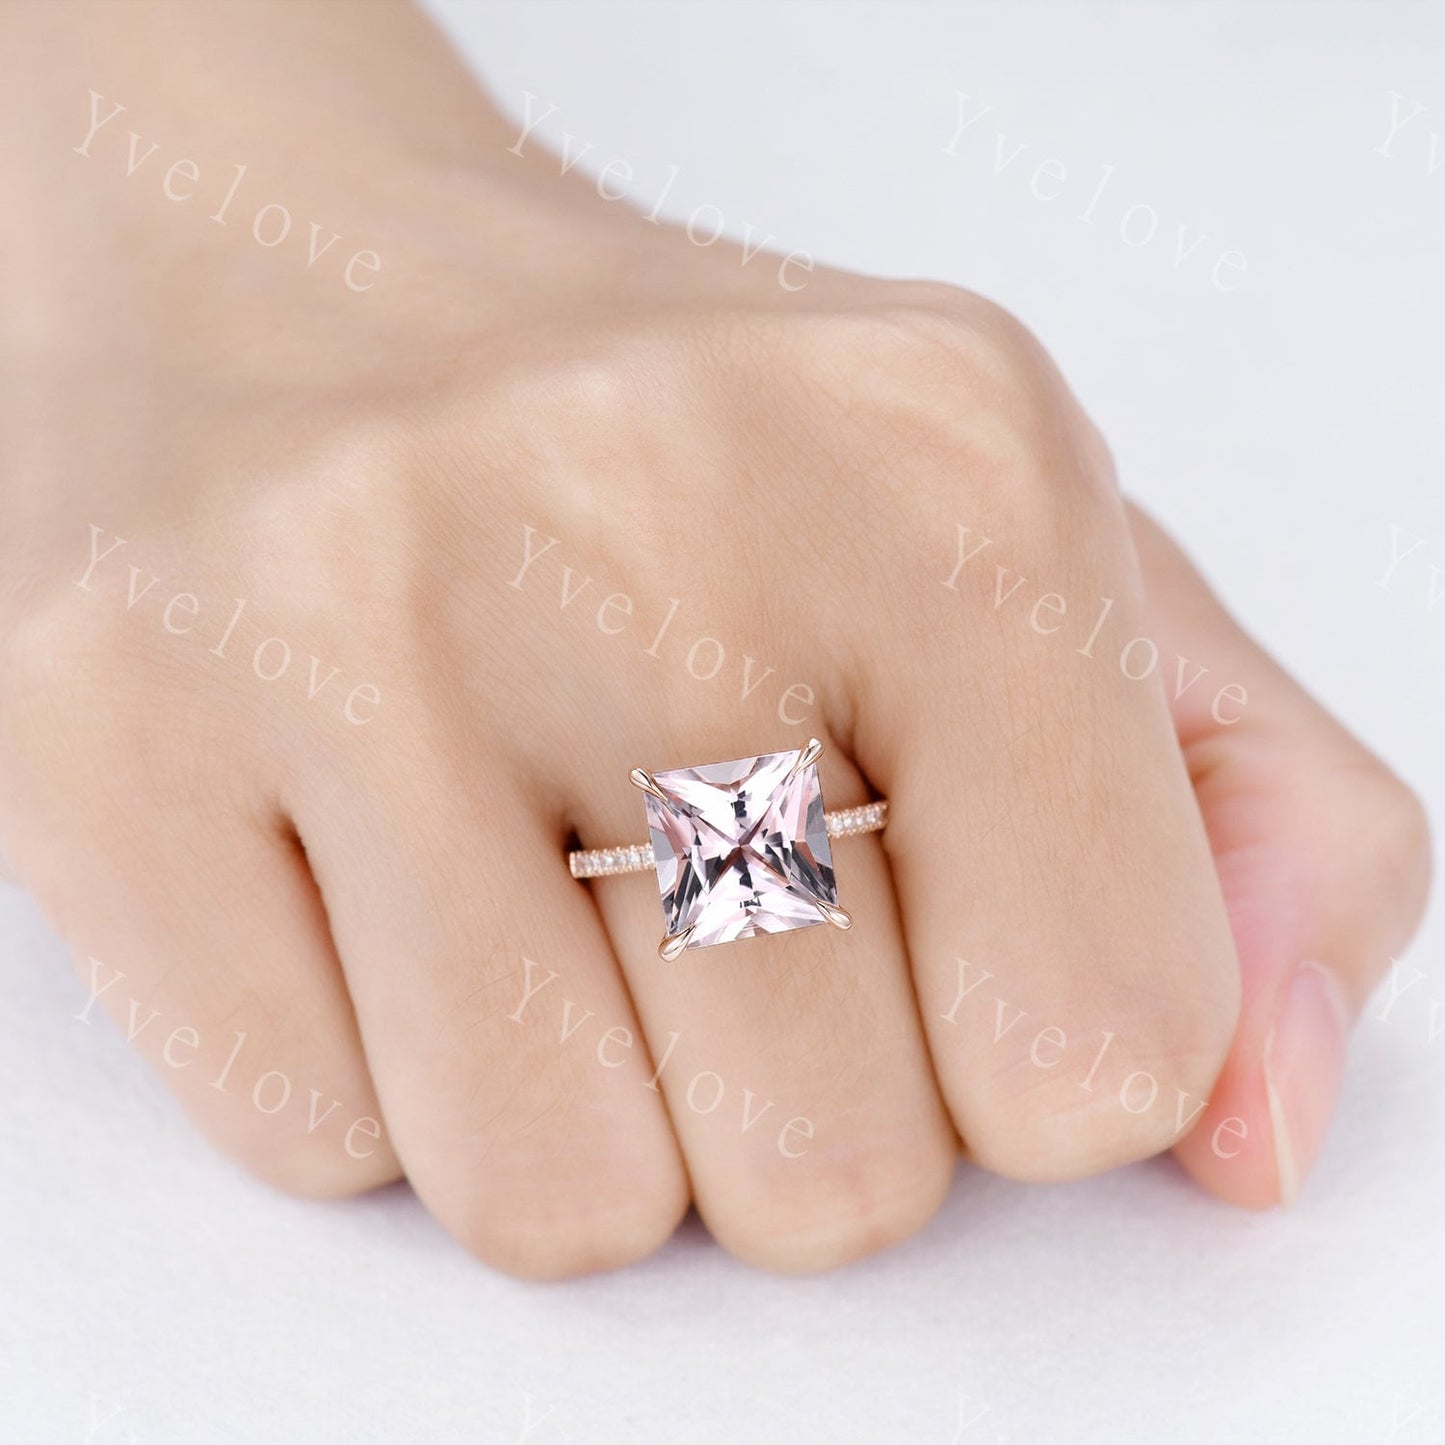 Morganite ring rose gold engagement ring diamond thin band 10mm princess cut big morganite natural vs stone 14k ring anniversary gift